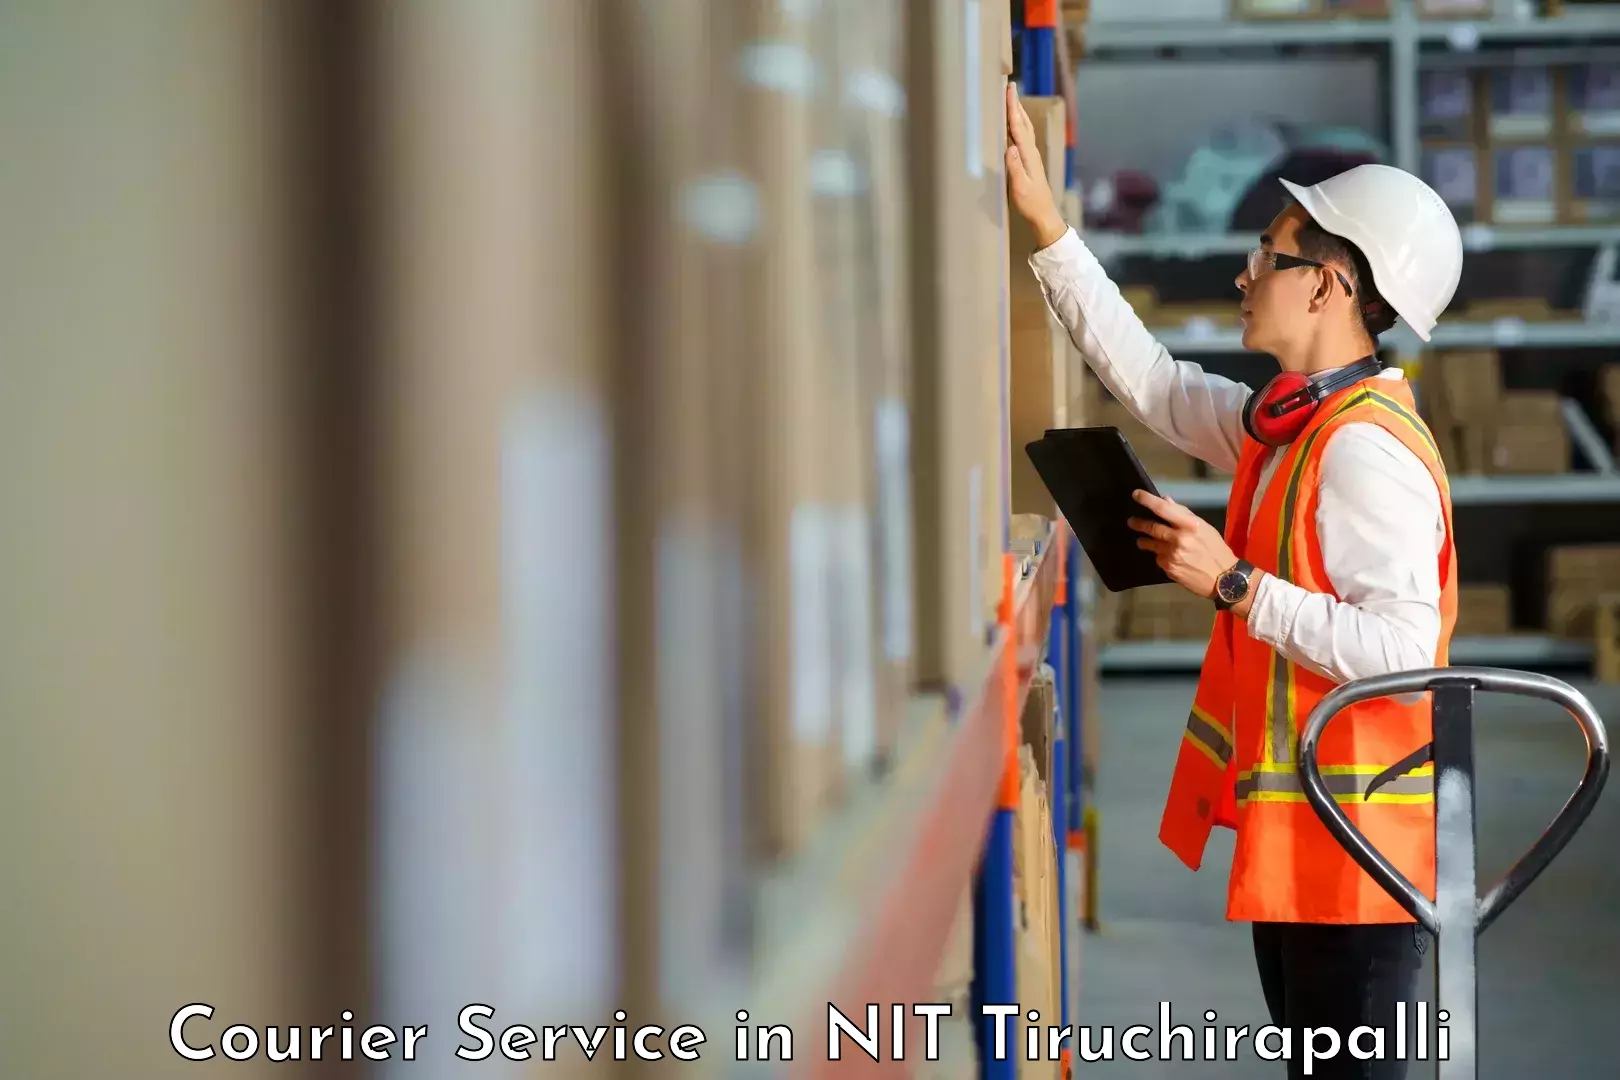 Express logistics providers in NIT Tiruchirapalli